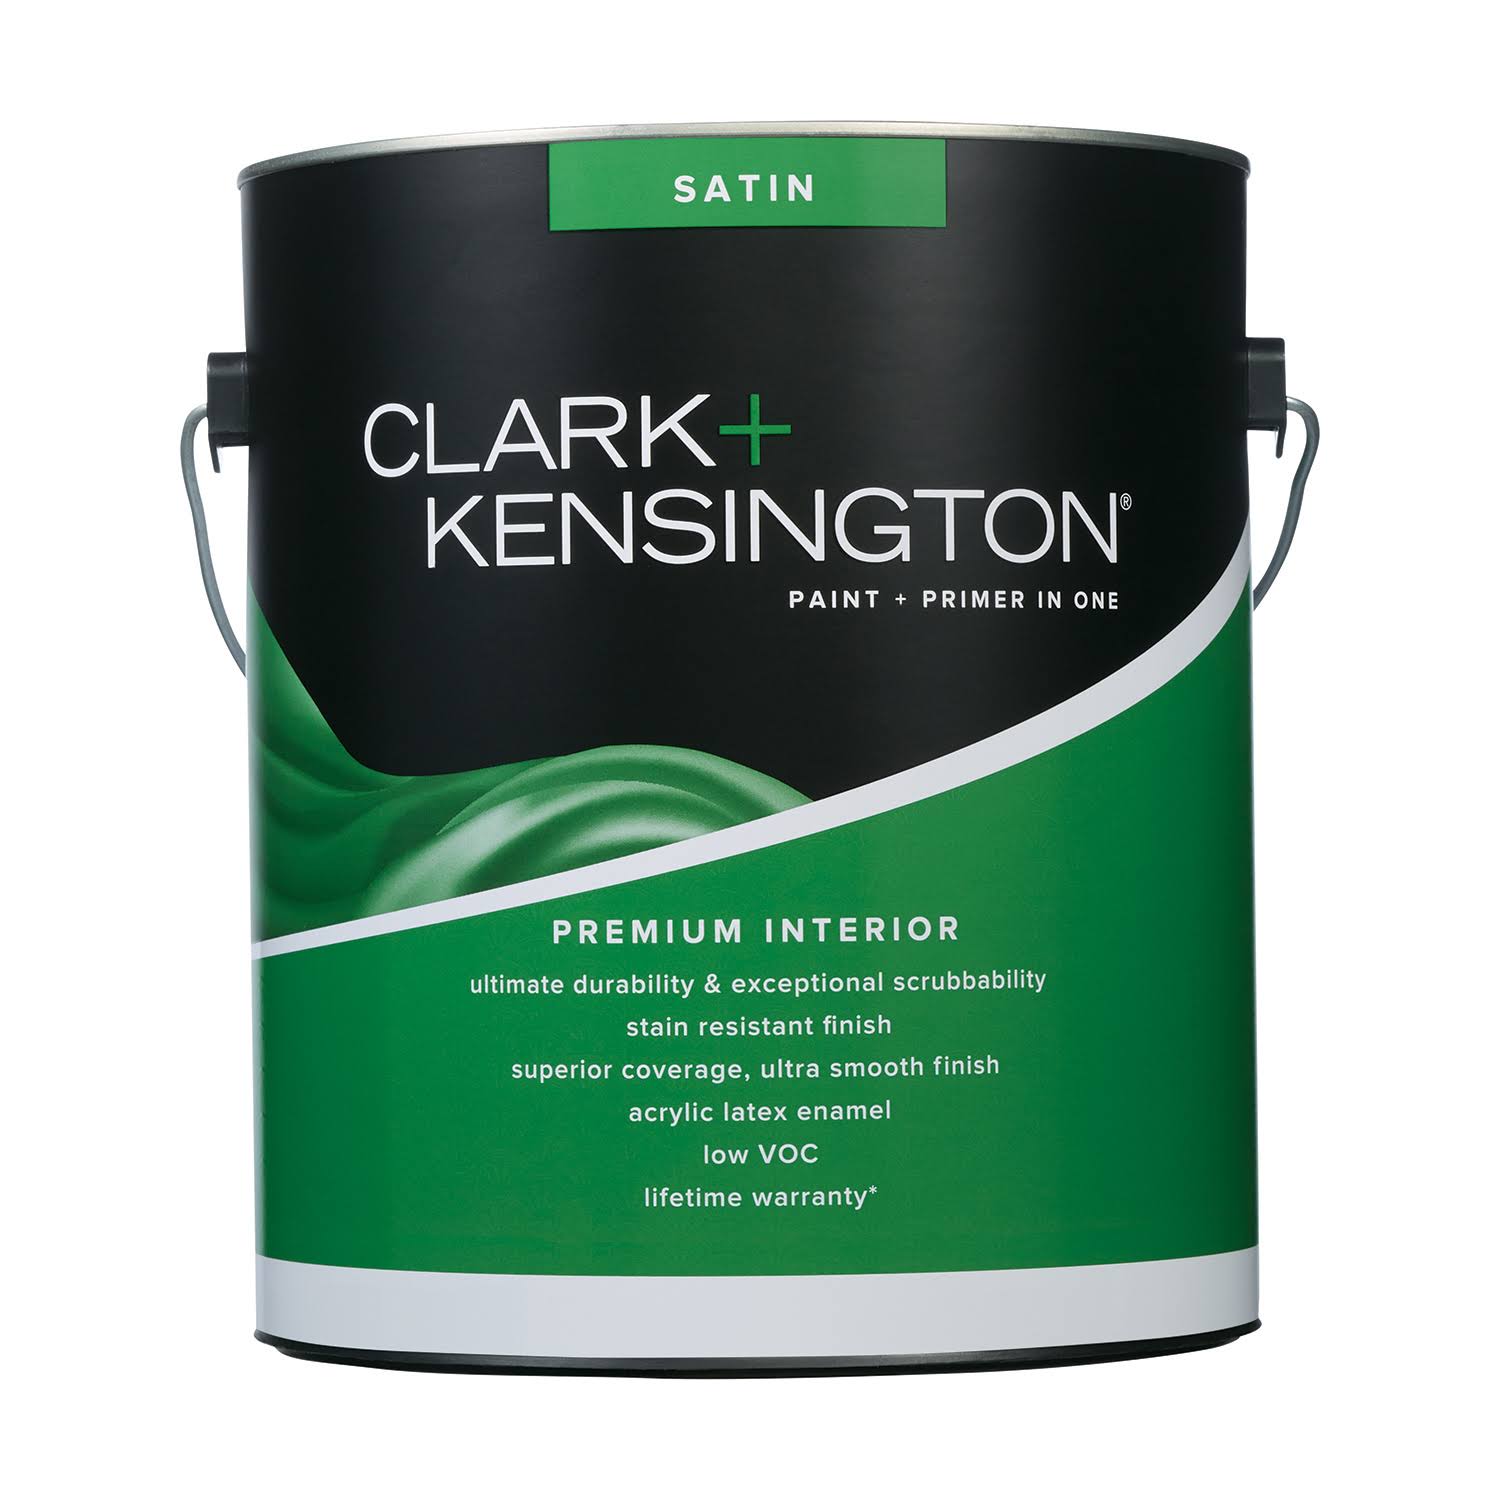 Clark+kensington Satin Designer White Premium Paint Interior 1 Gal